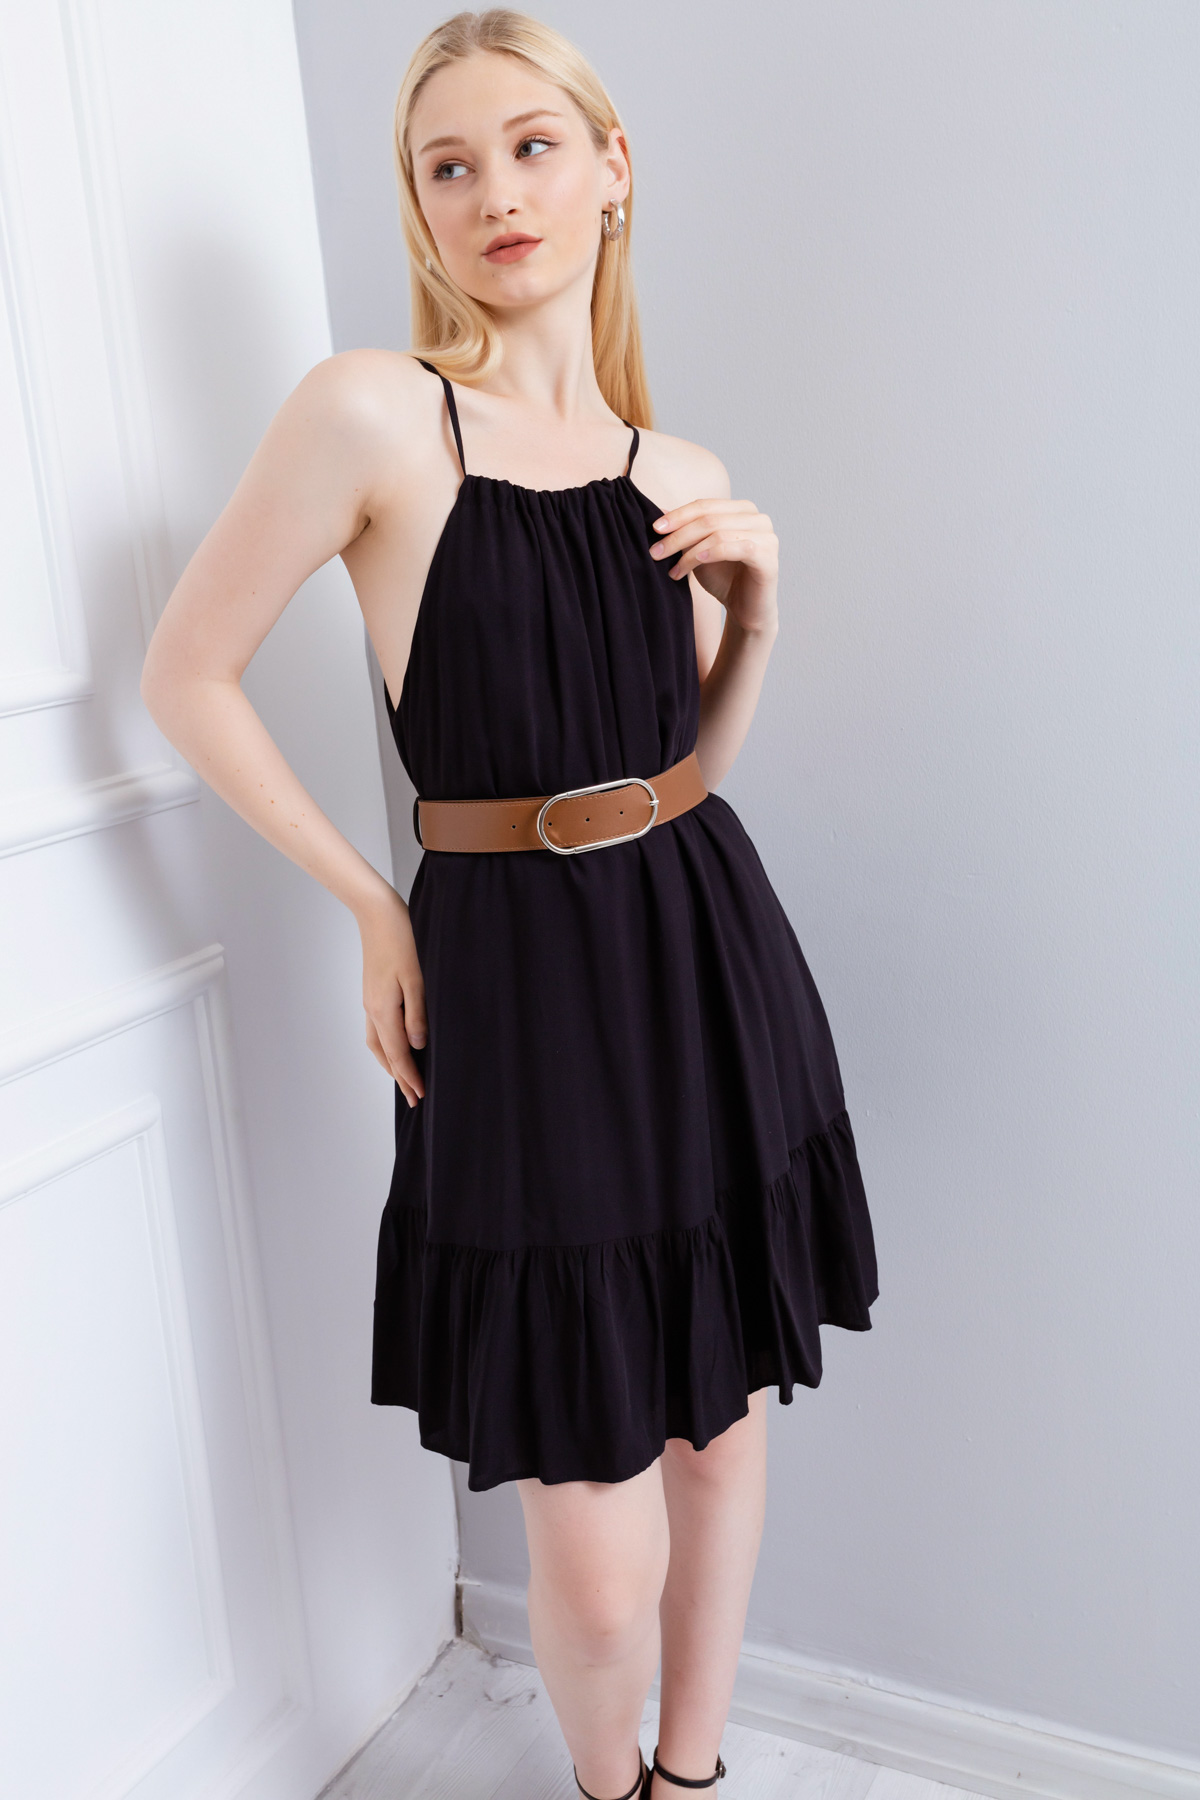 Women's Black Strap Dress With Belt - 21Y0128841